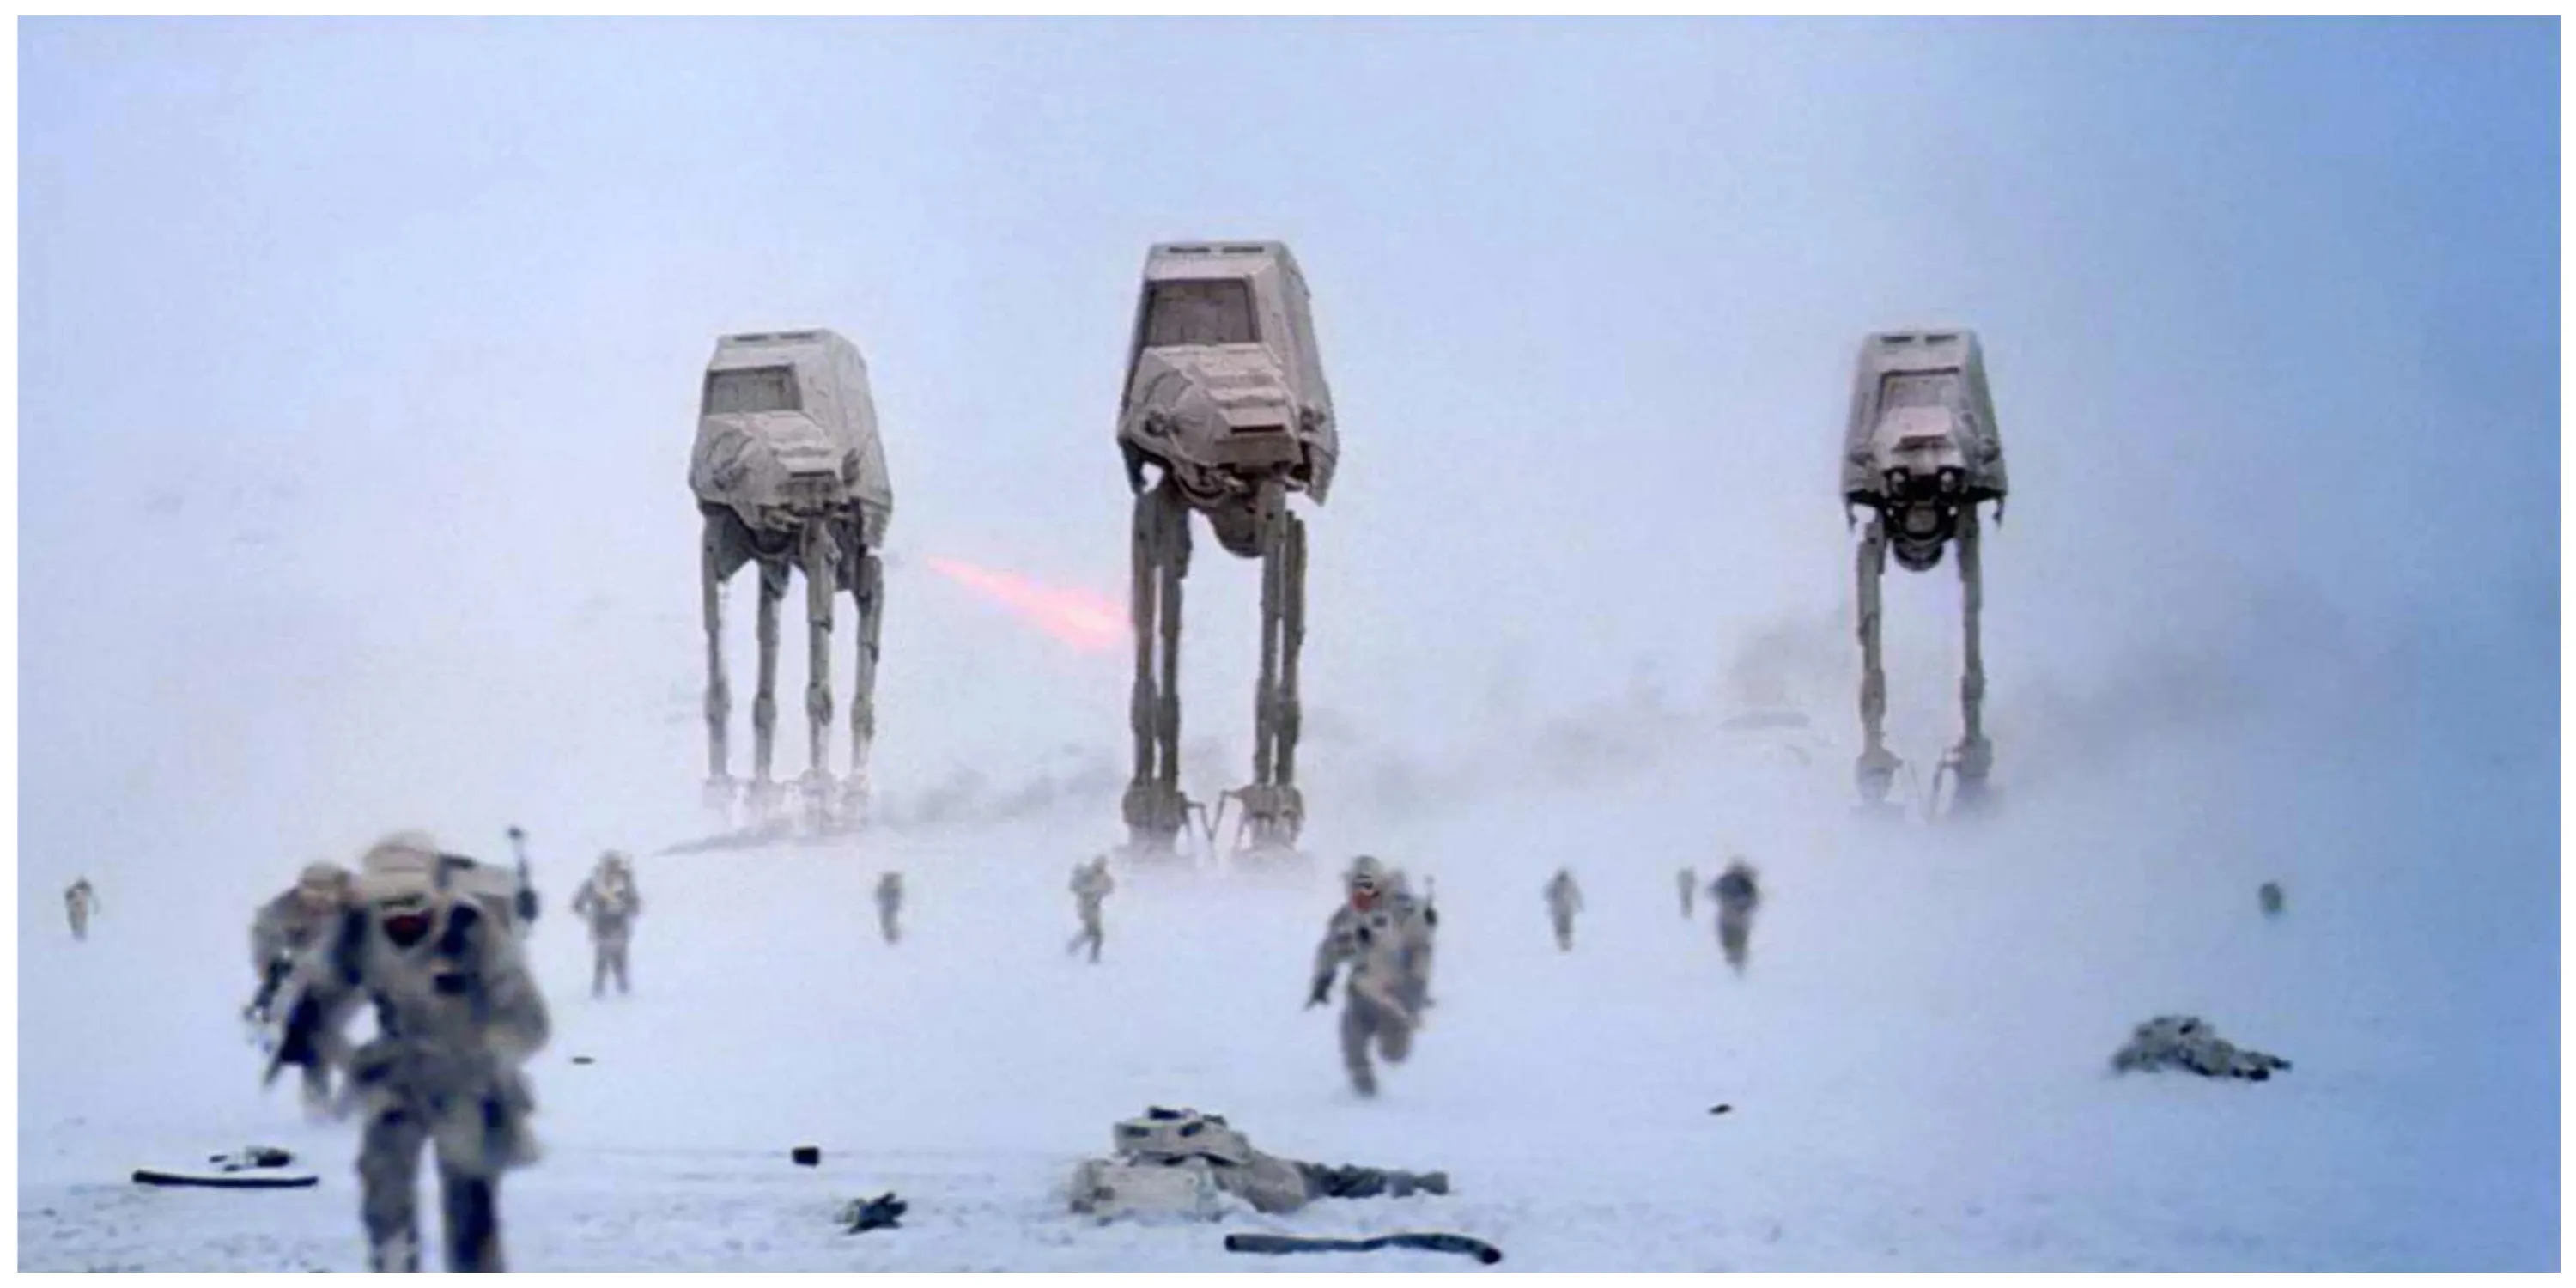 Schermata della Battaglia di Hoth in L'Impero colpisce ancora